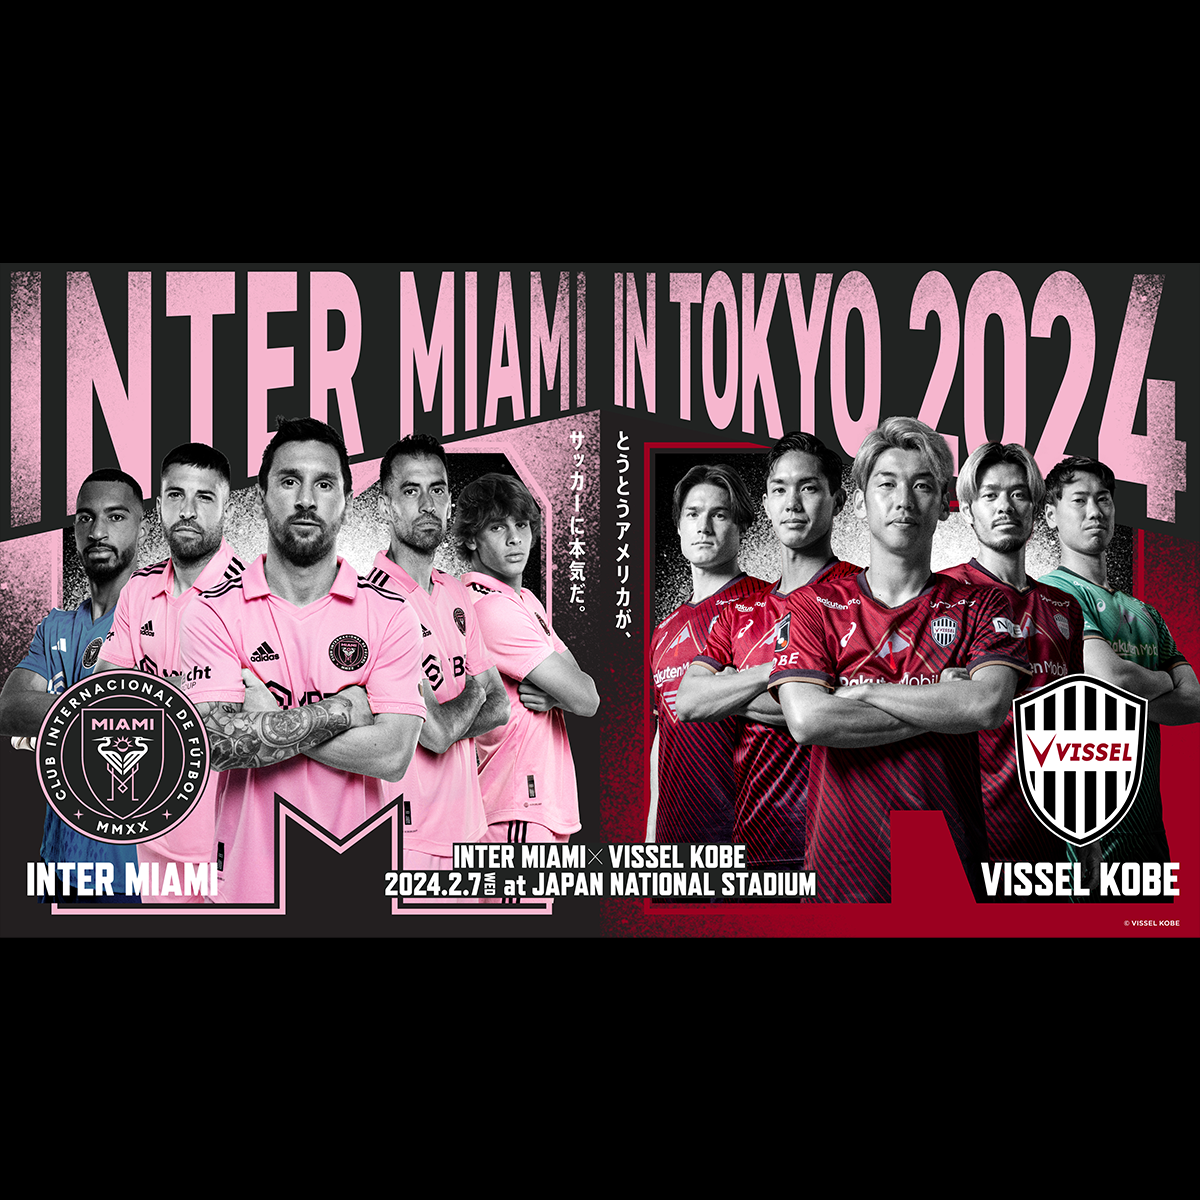 INTER MIAMI IN TOKYO 2024